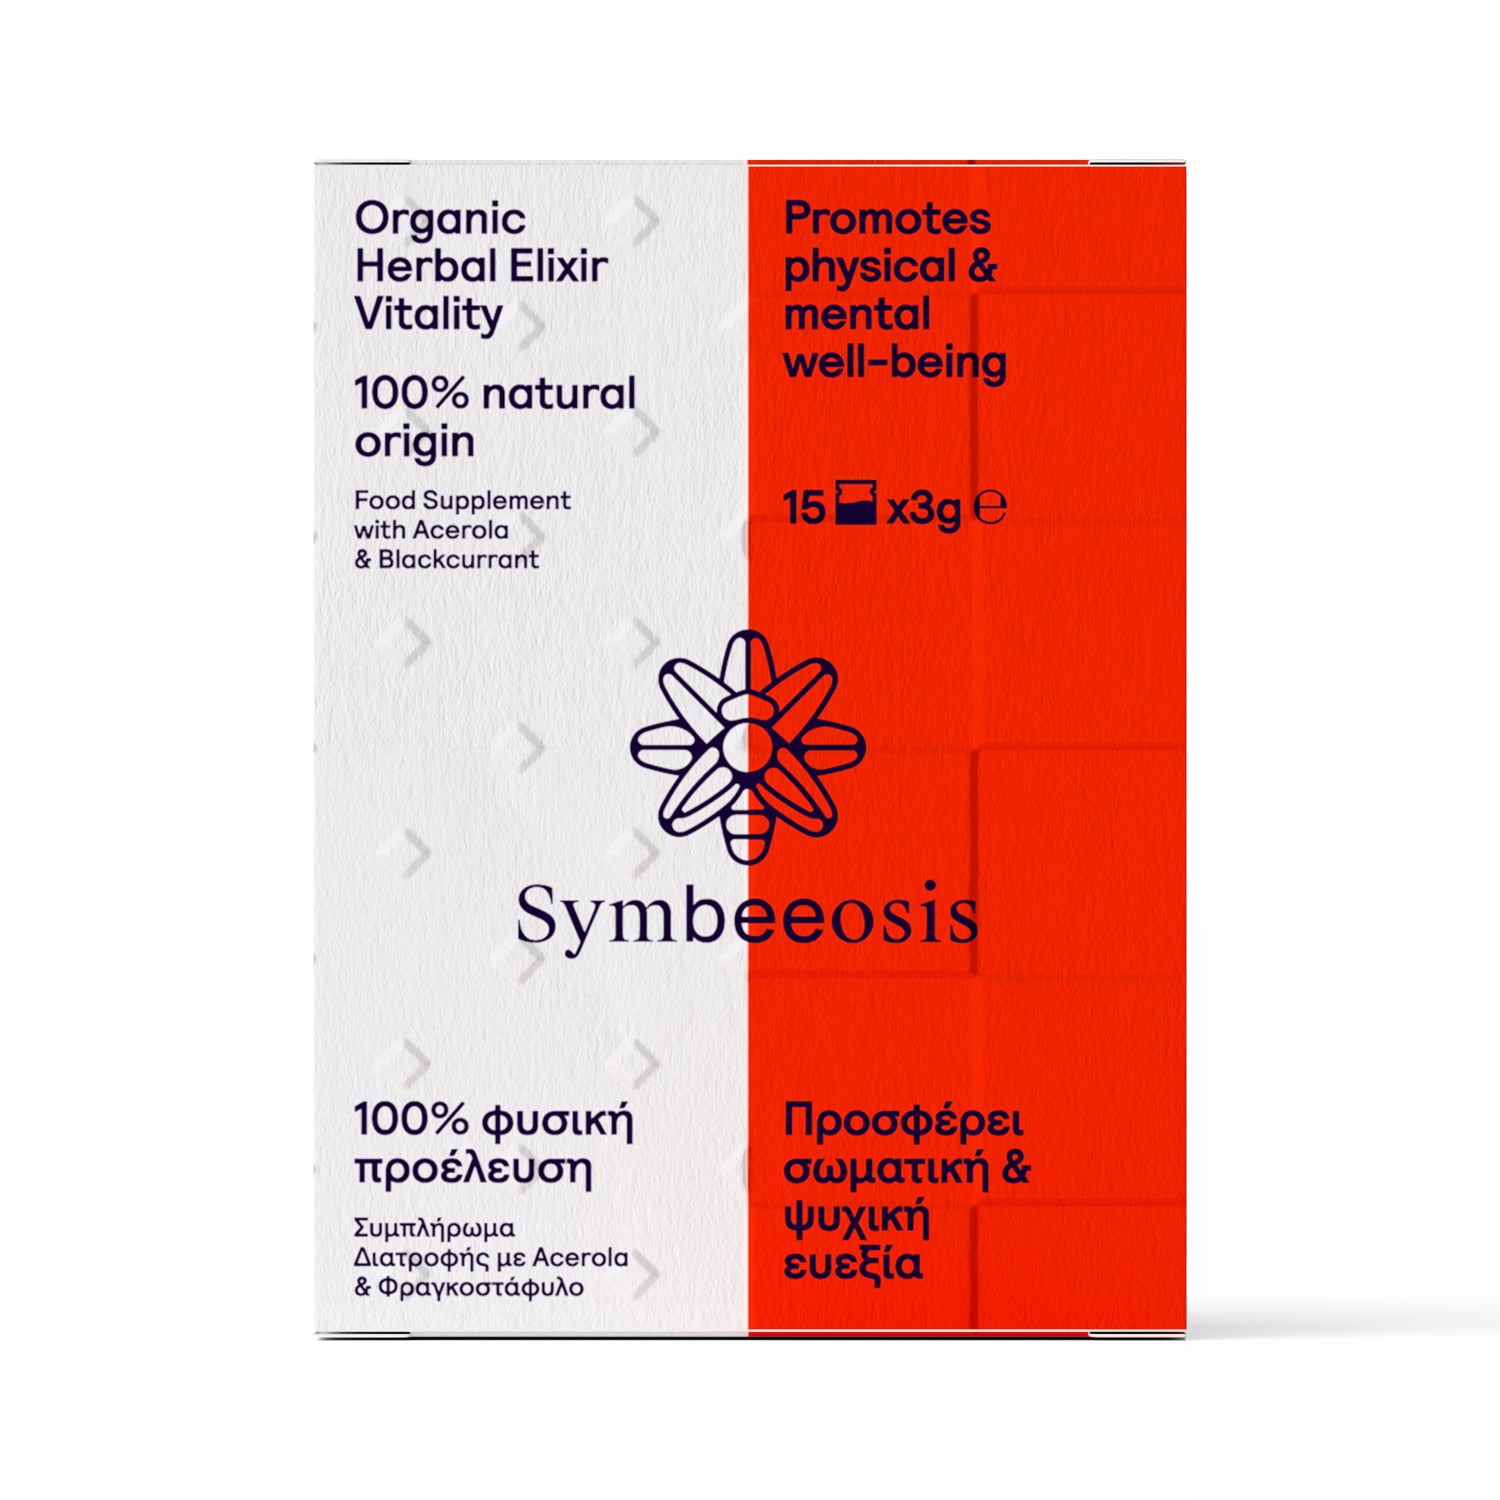 Organic Herbal Elixir Vitality - 45g - Symbeeosis